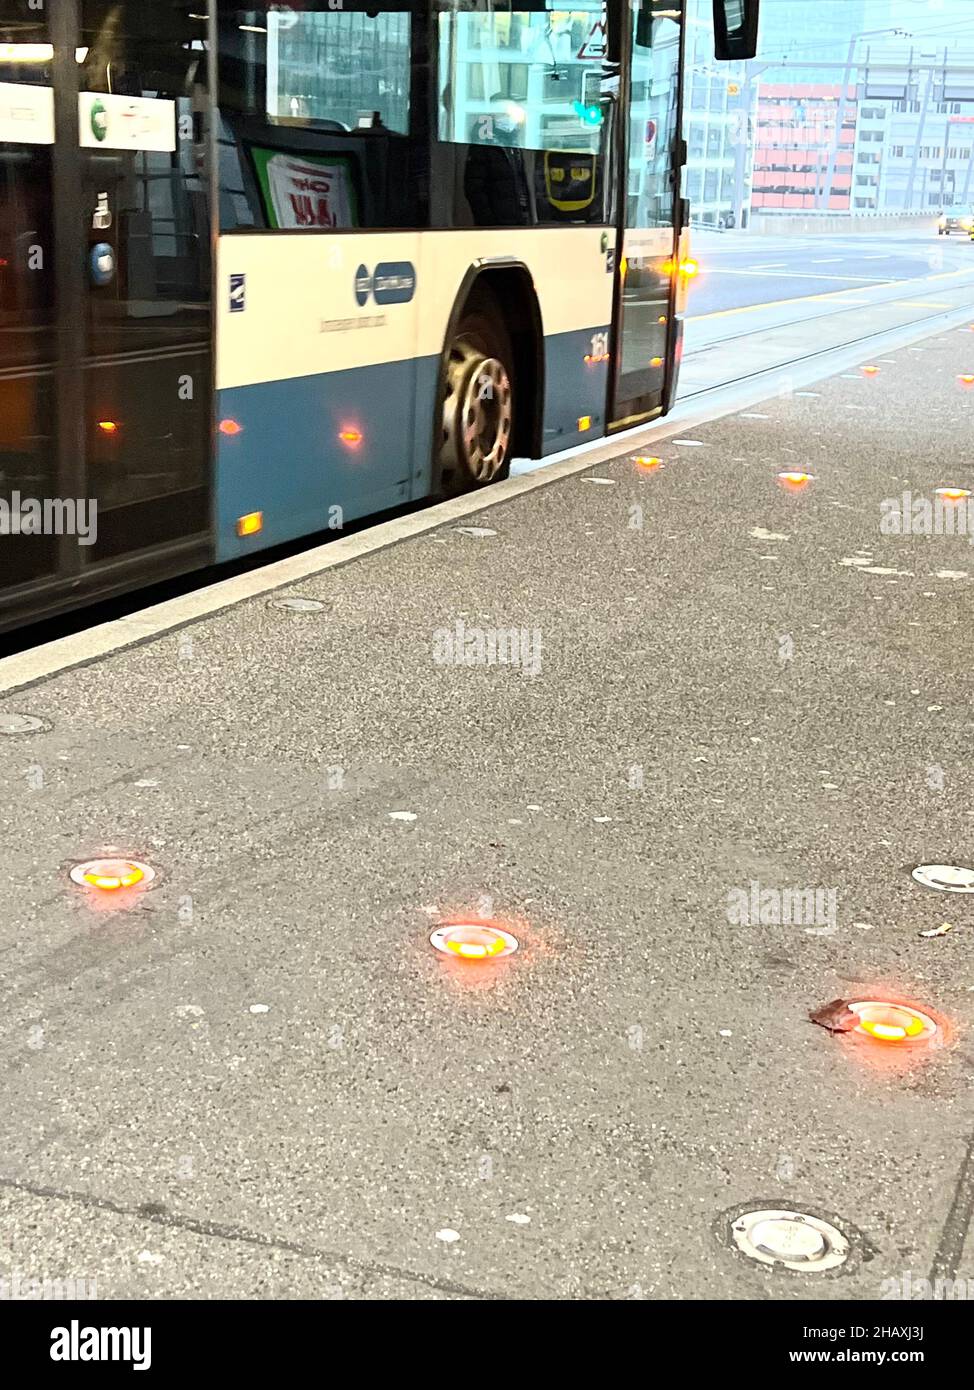 Öffentliche Verkehrsmittel Bus an der Bushaltestelle. Es gibt rote Lichter auf dem Boden, die verhindern, dass die Fahrräder auf dem Bürgersteig fahren, wenn es einen Bus gibt. Stockfoto